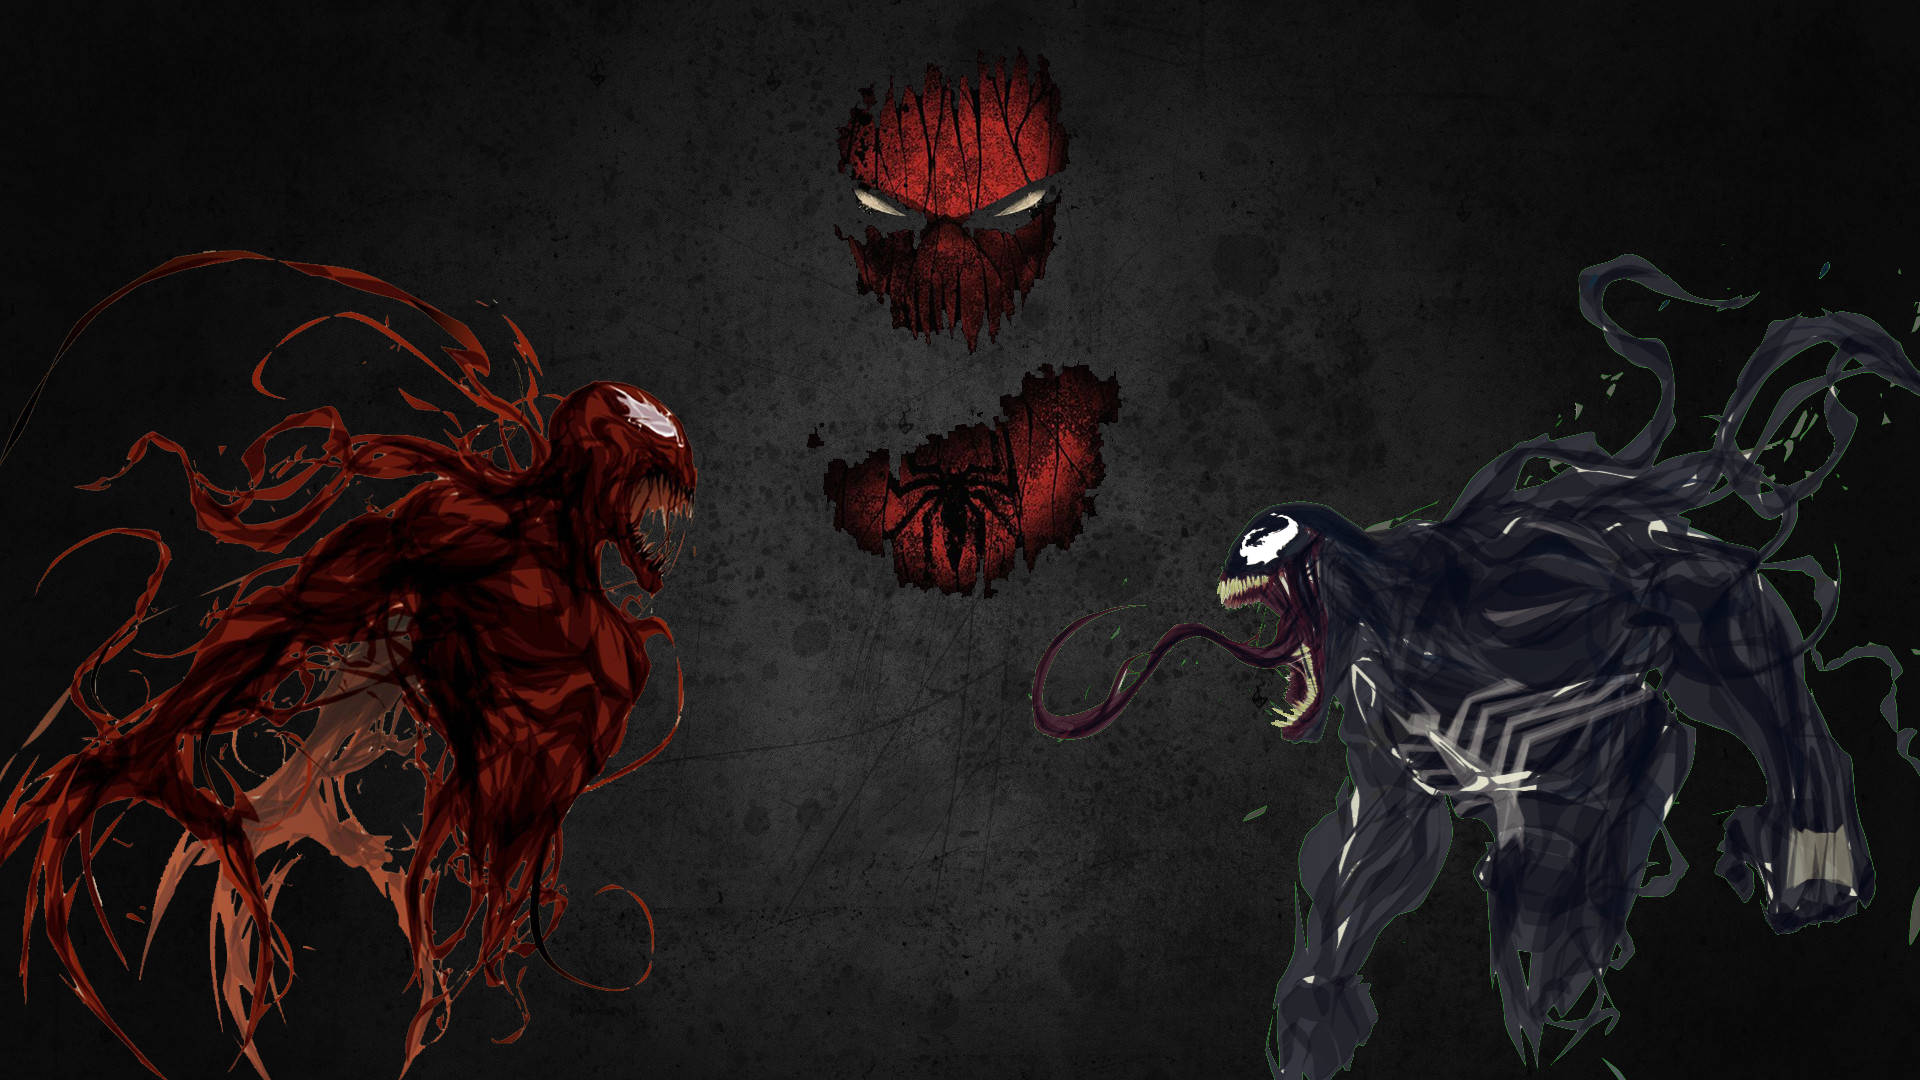 Carnage Red Venom, deadly venom, deadly weapon, destruction, let